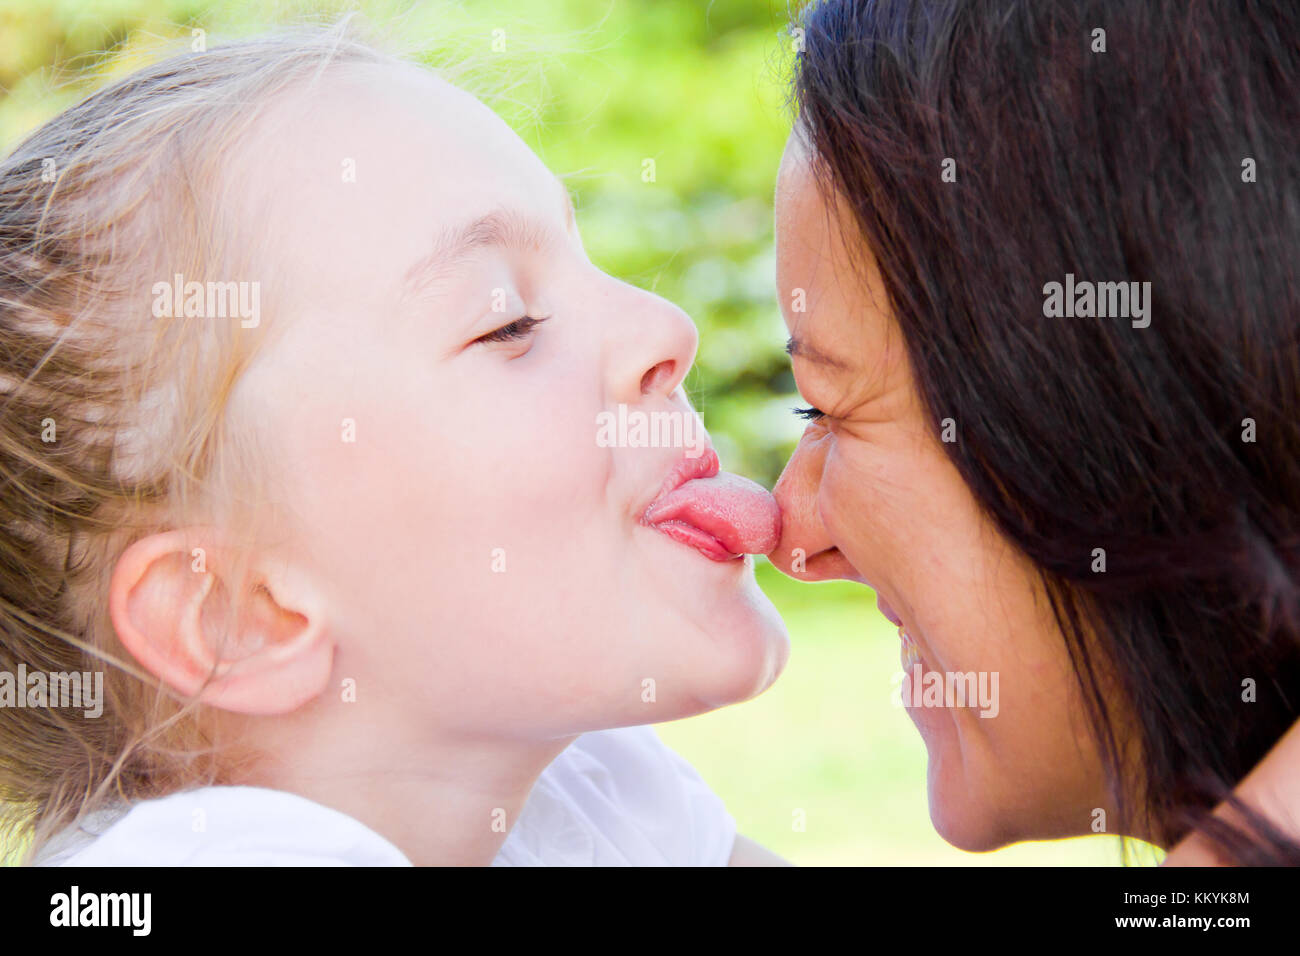 Папа лижет дочке русские. Мать целует дочь. Мама и дочь поцелуй с языком. Поцелуй мамы и дочери в губы. Мама целует дочку в губы.